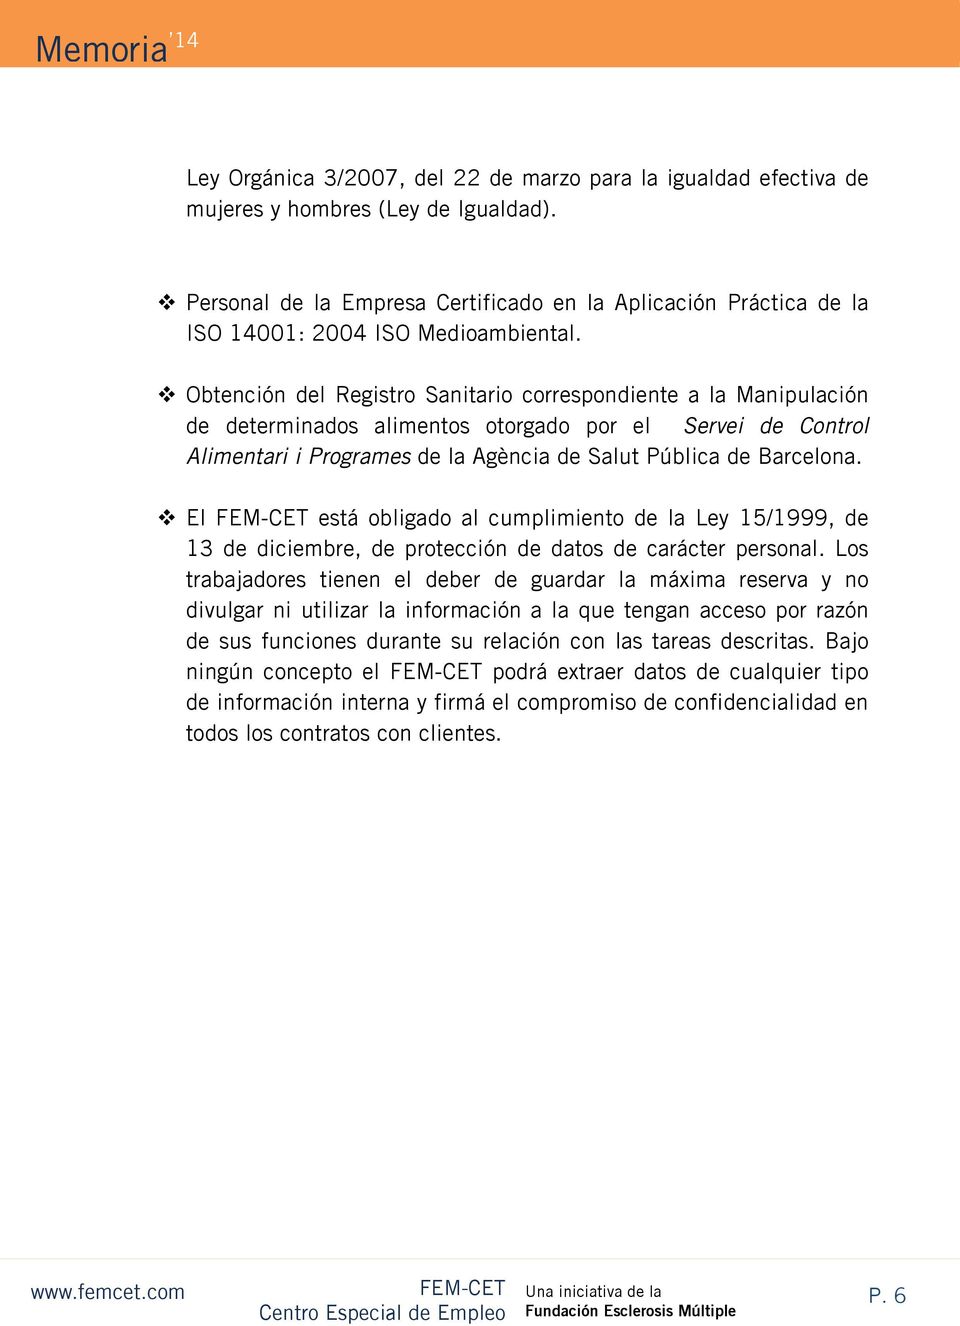 Obtención del Registro Sanitario correspondiente a la Manipulación de determinados alimentos otorgado por el Servei de Control Alimentari i Programes de la Agència de Salut Pública de Barcelona.